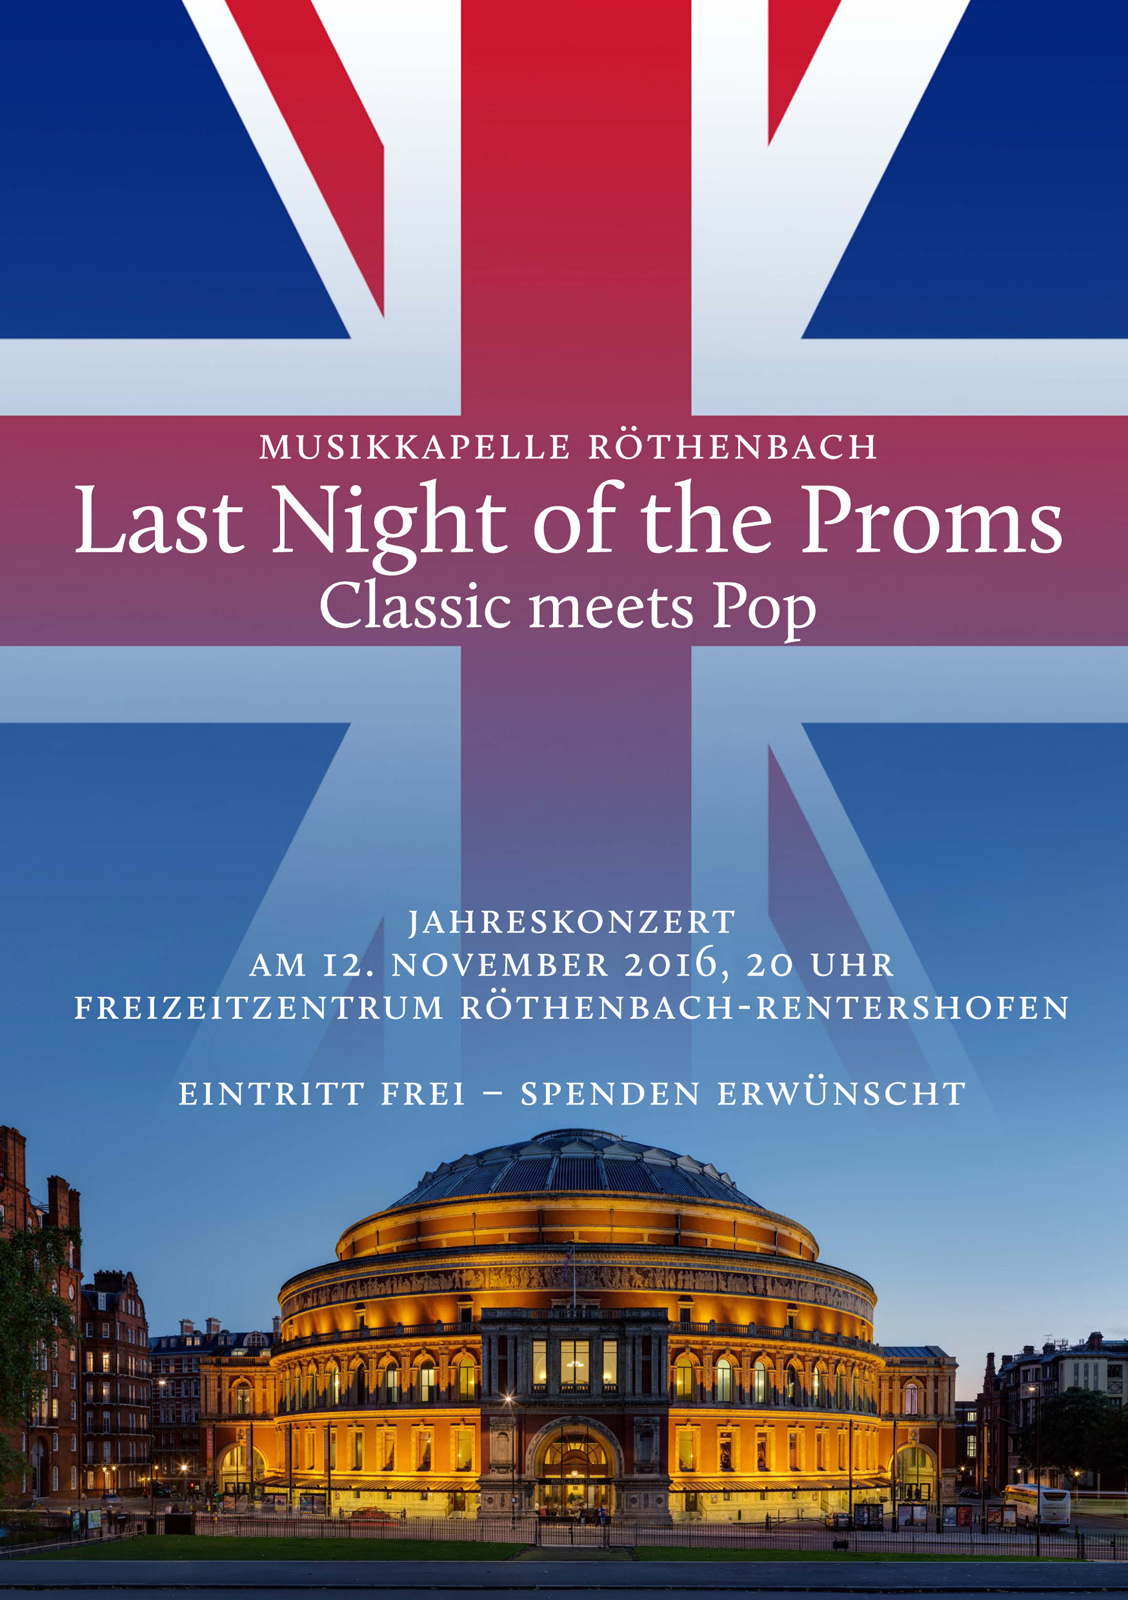 Jahreskonzert der Musikkapelle Röthenbach 2016 unter dem Motto "Last Night of the Proms - Classic meets Pop"